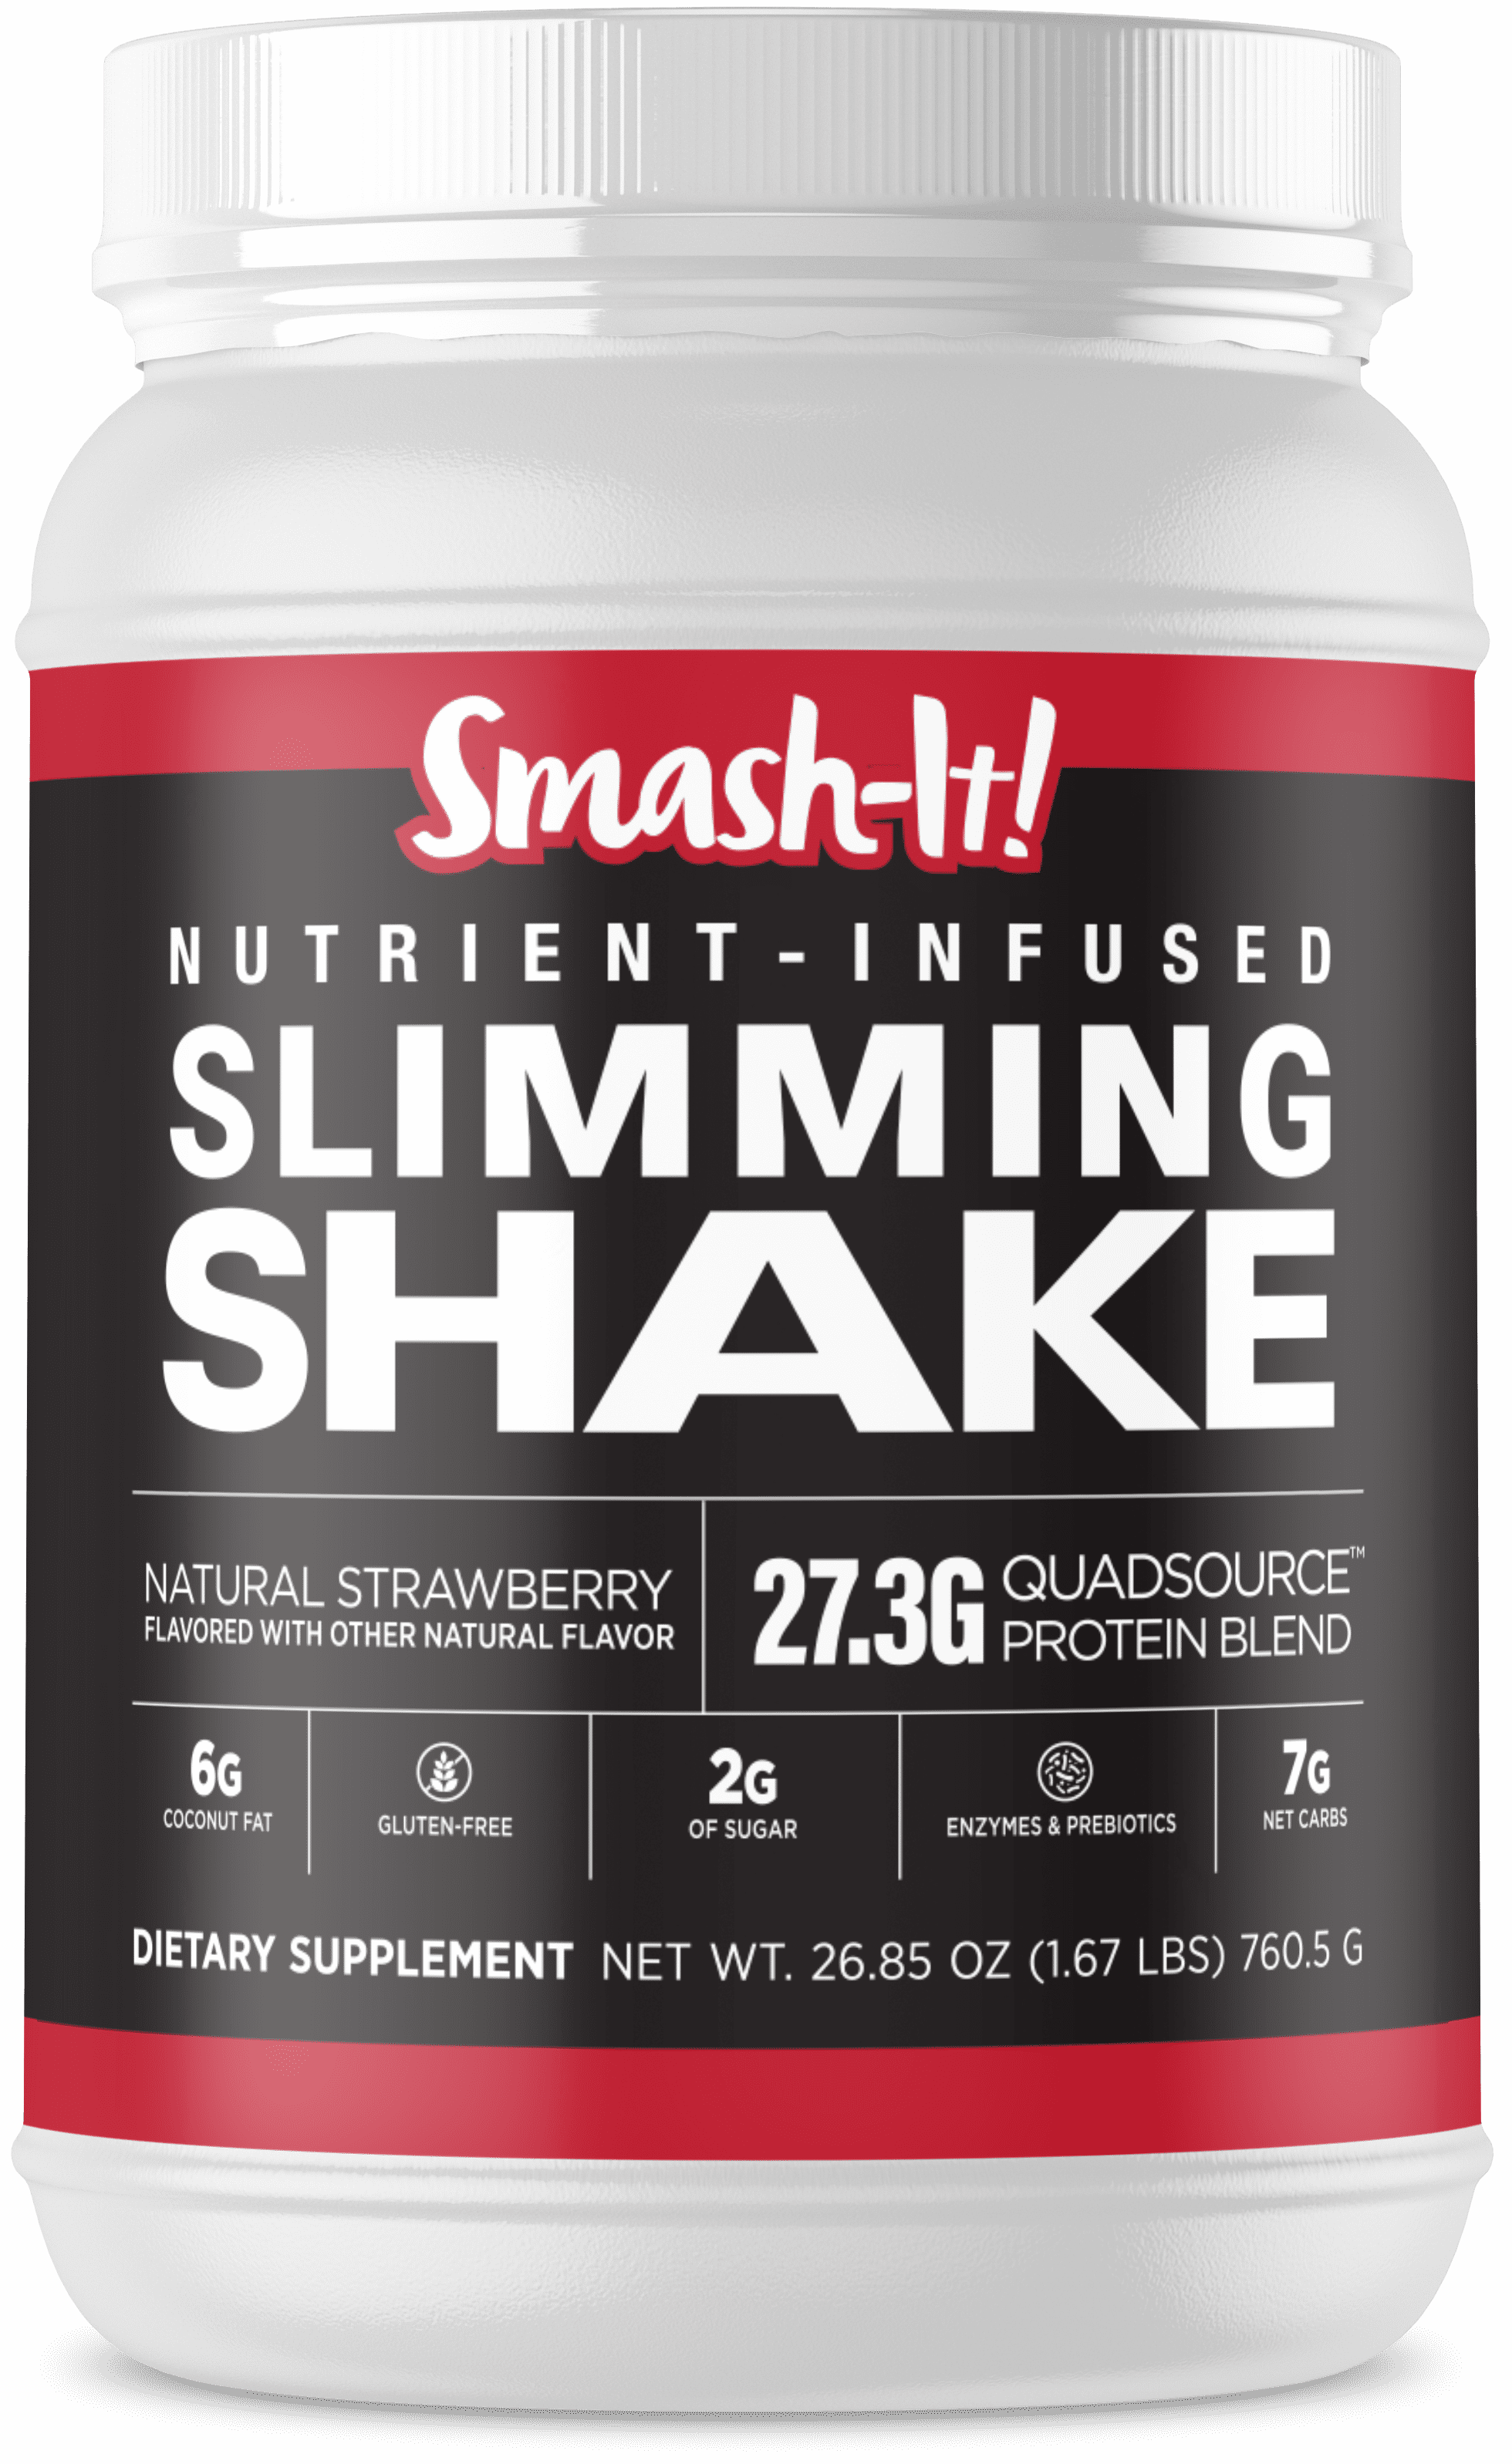 Vade Nutrition, Dissolvable Protein Packs, 100% Isolate, Strawberry Milkshake